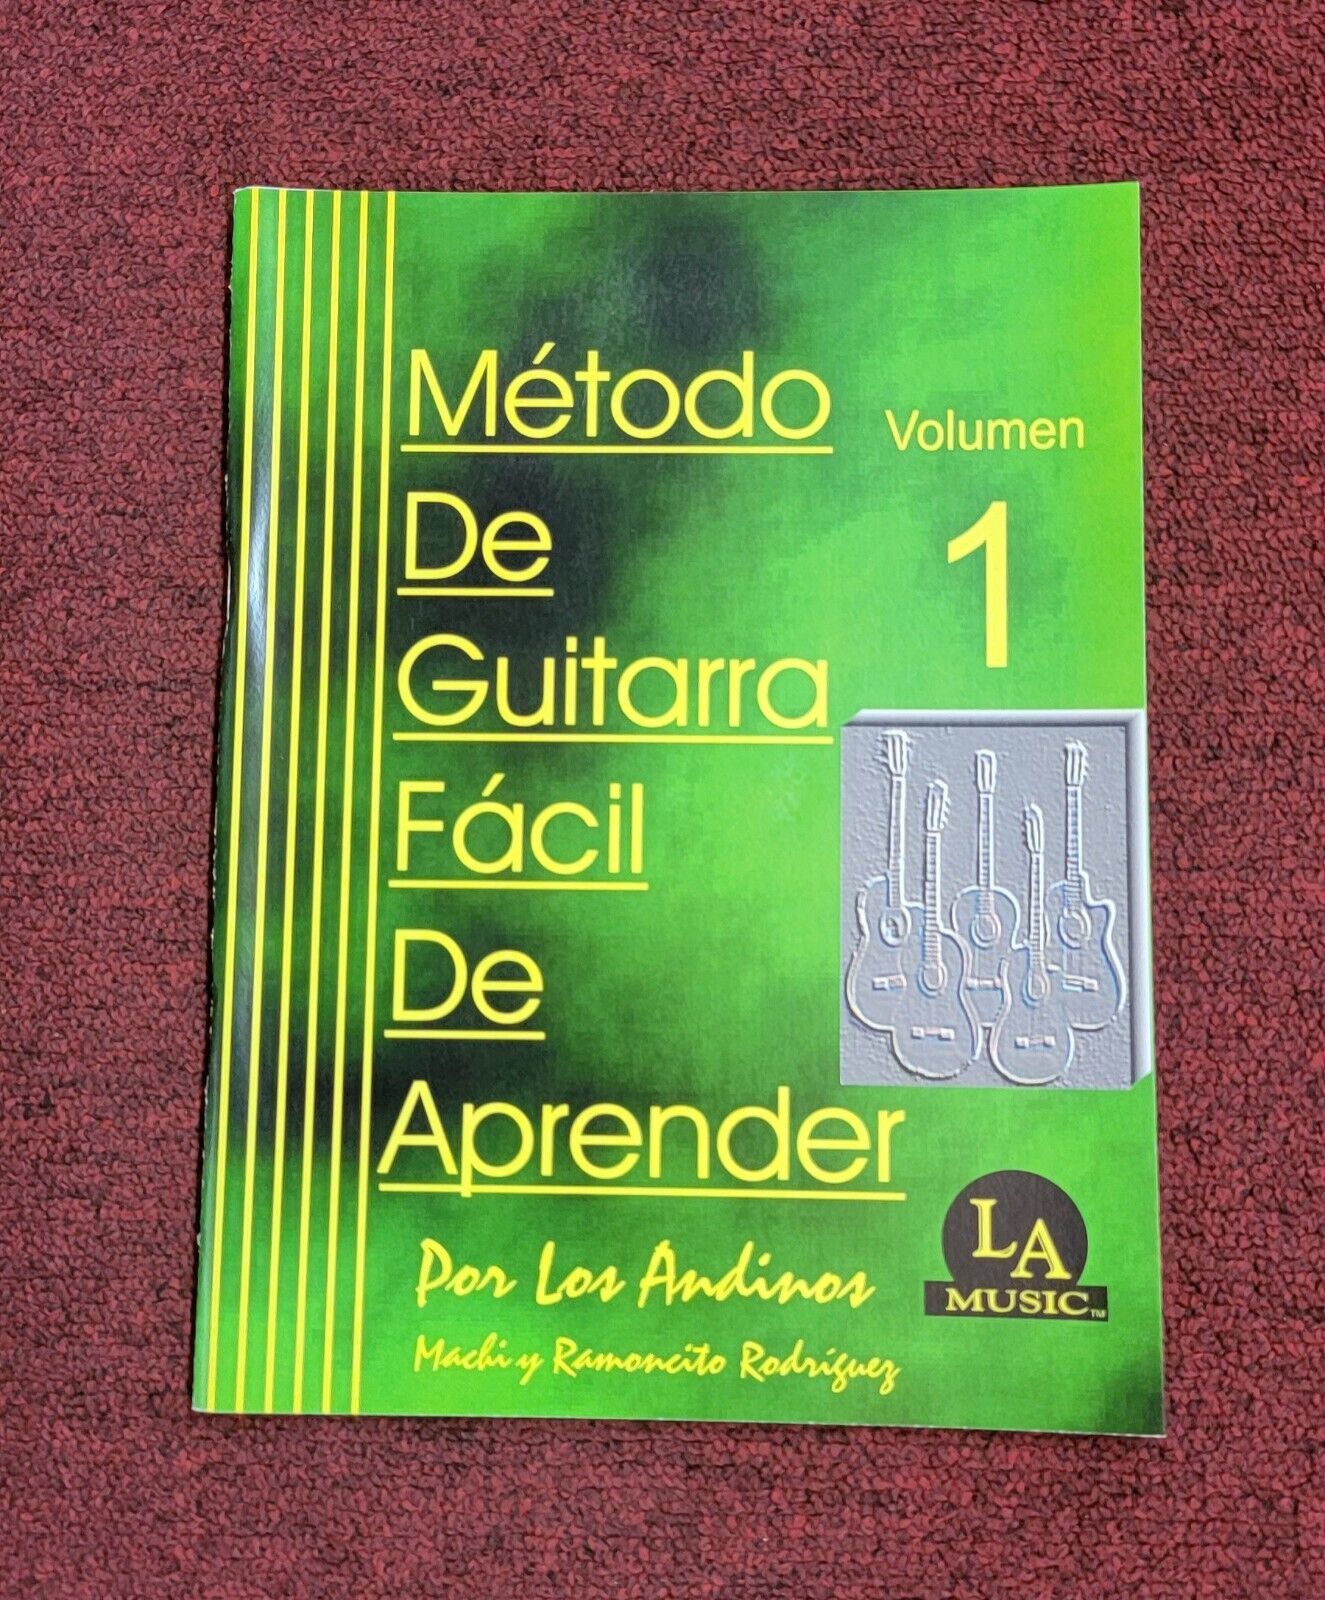 Academia Nos vemos bandera Libro Metodo De Guitarra Facil De Aprender Vol 1 | eBay